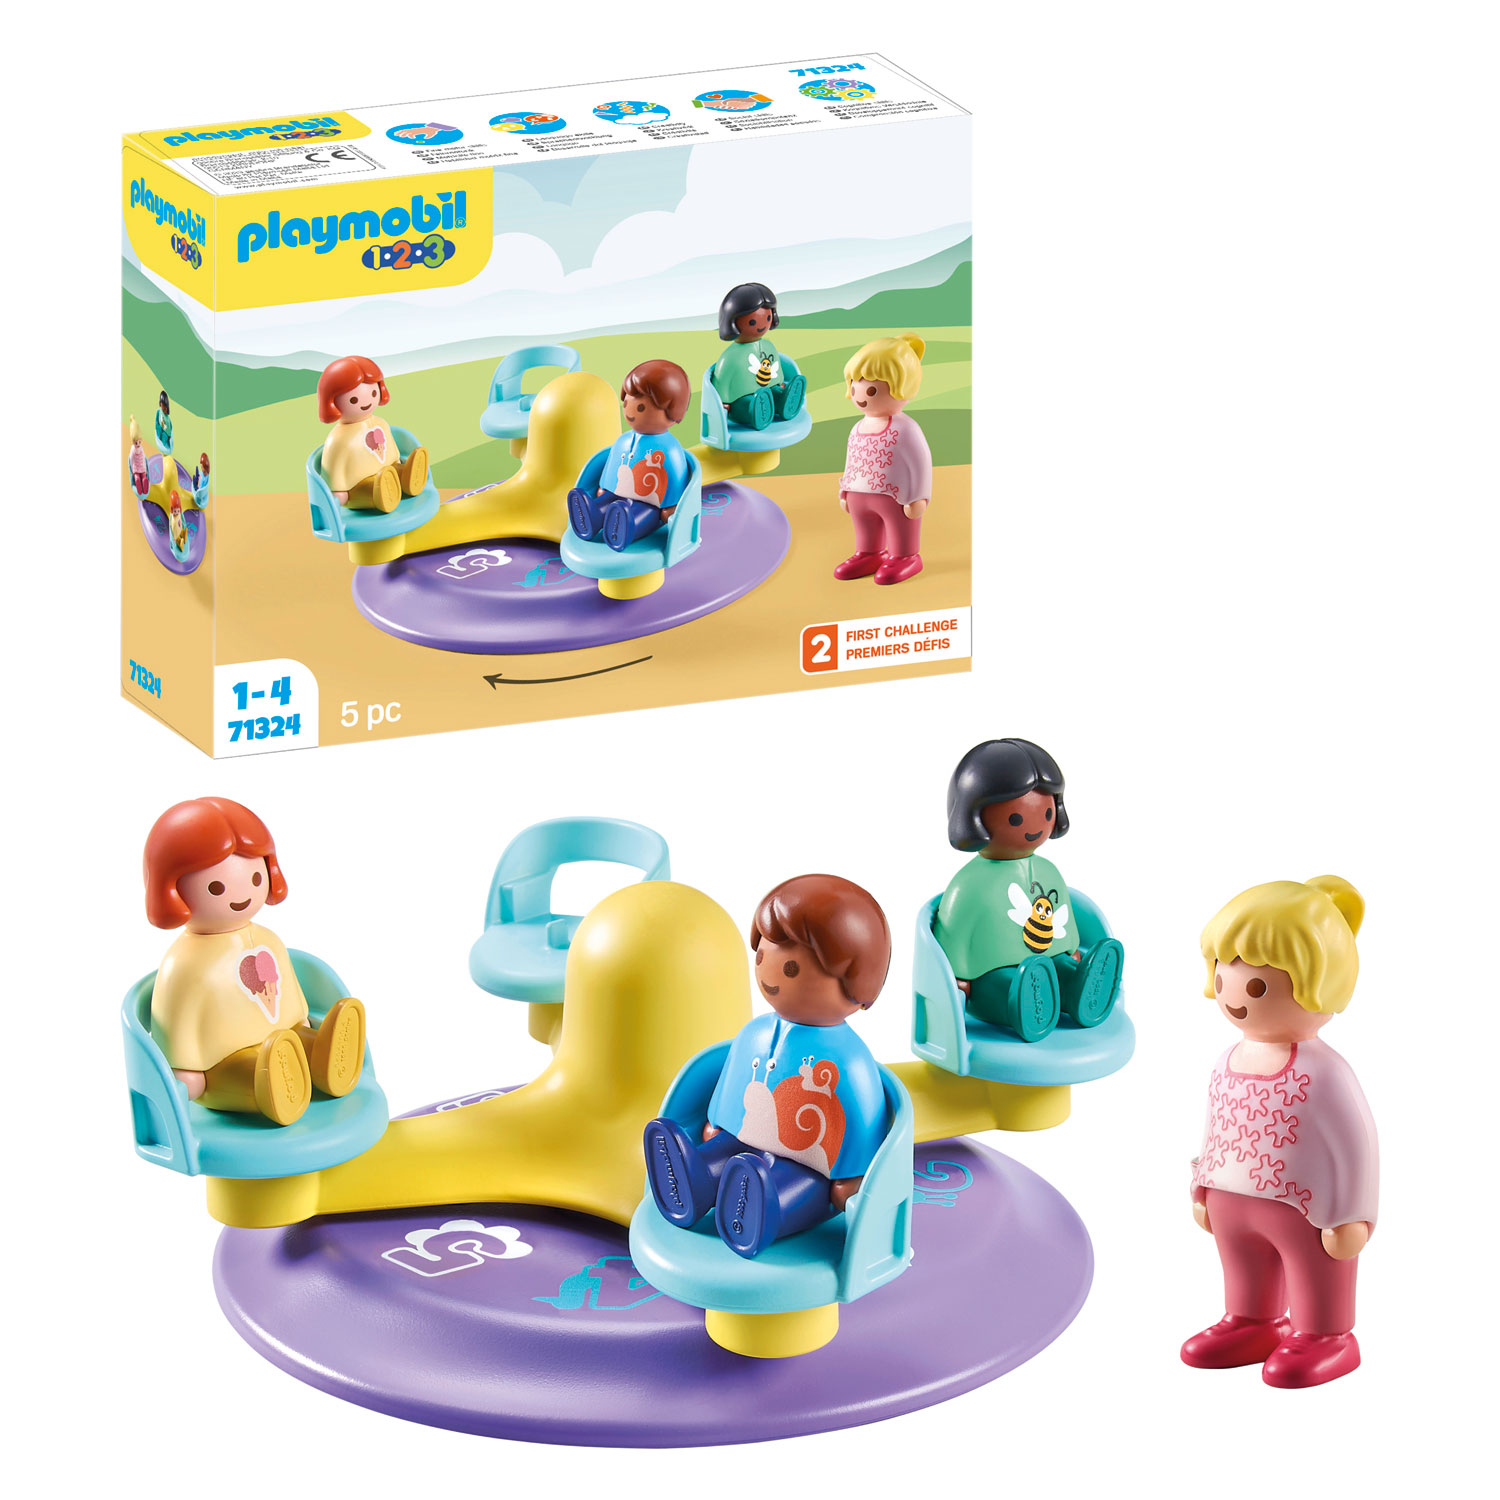 Playmobil 1.2.3. Carrousel pour enfants - 71324